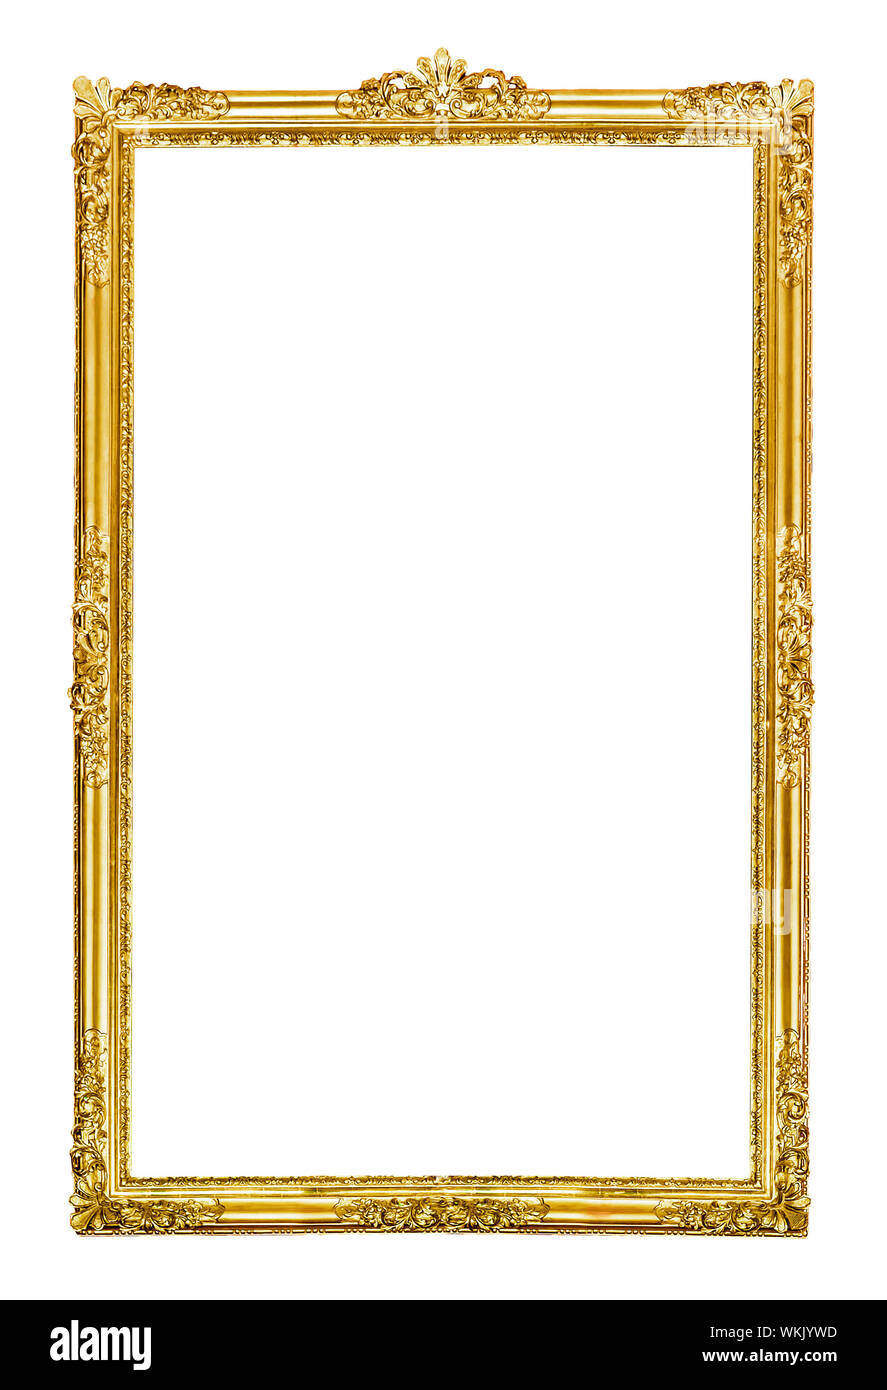 Una imagen de un bonito marco dorado vintage Fotografía de stock - Alamy